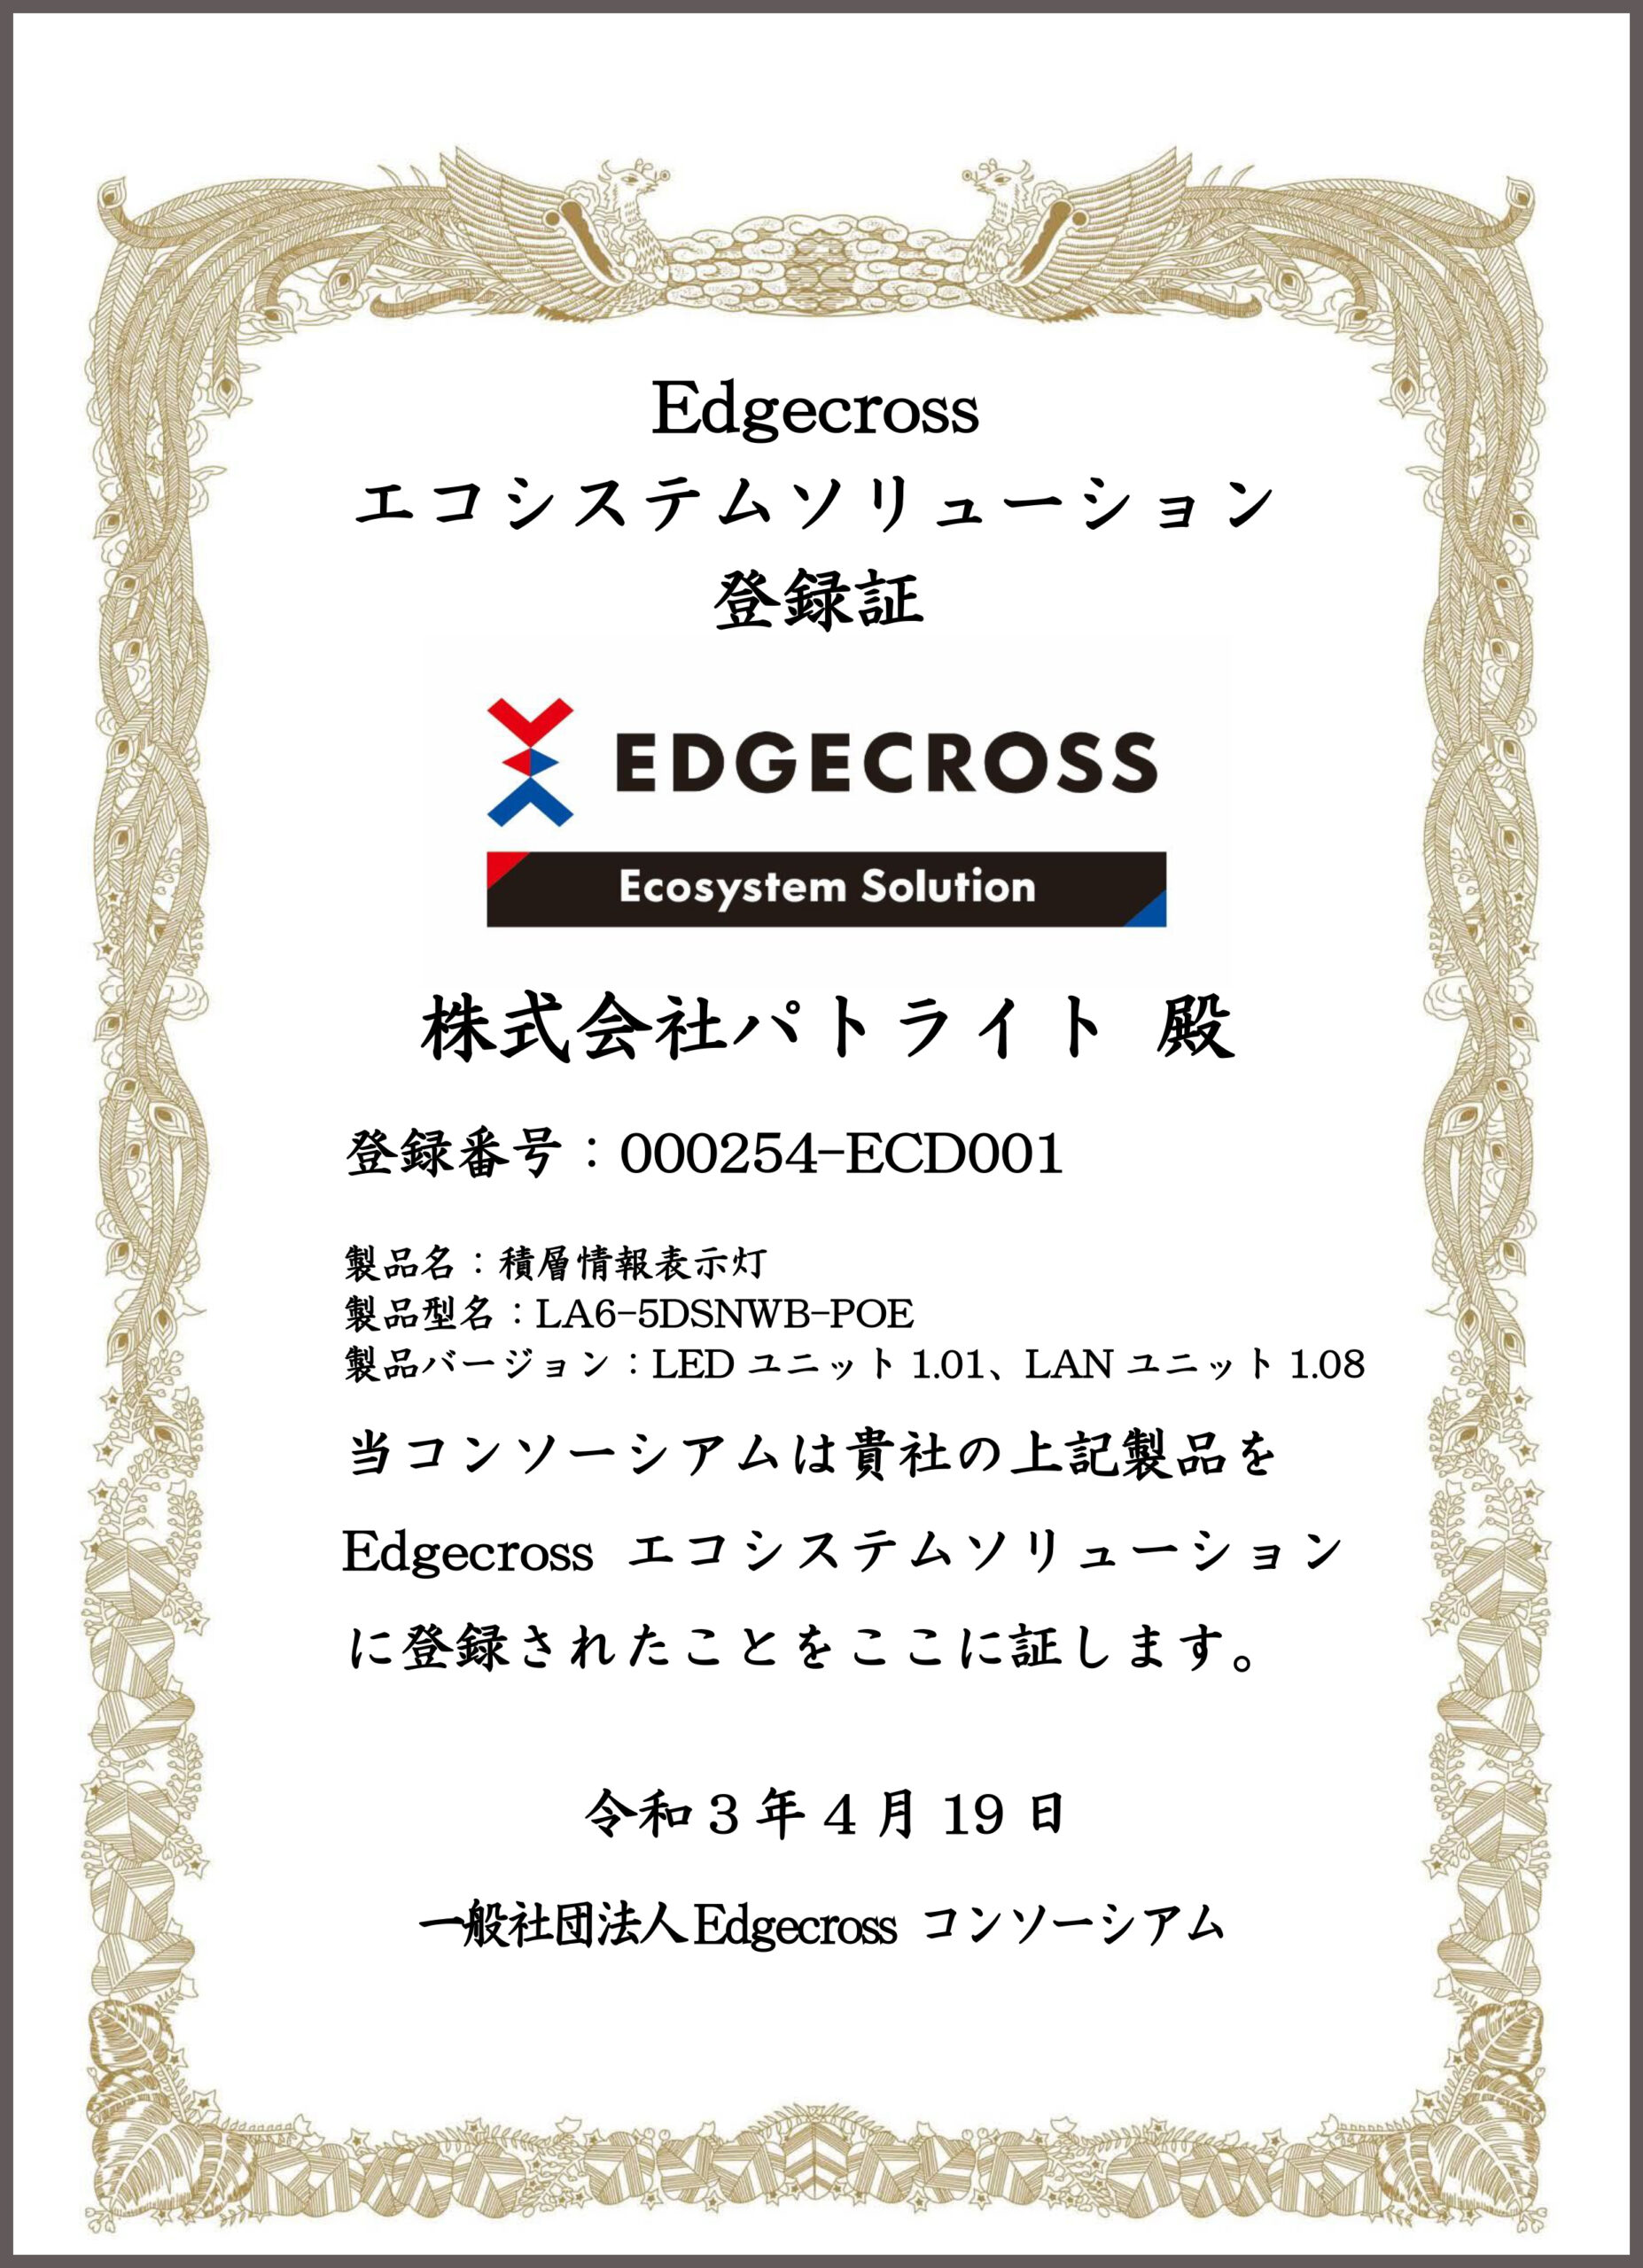 パトライト、Edgecross　エコシステムソリューションに登録